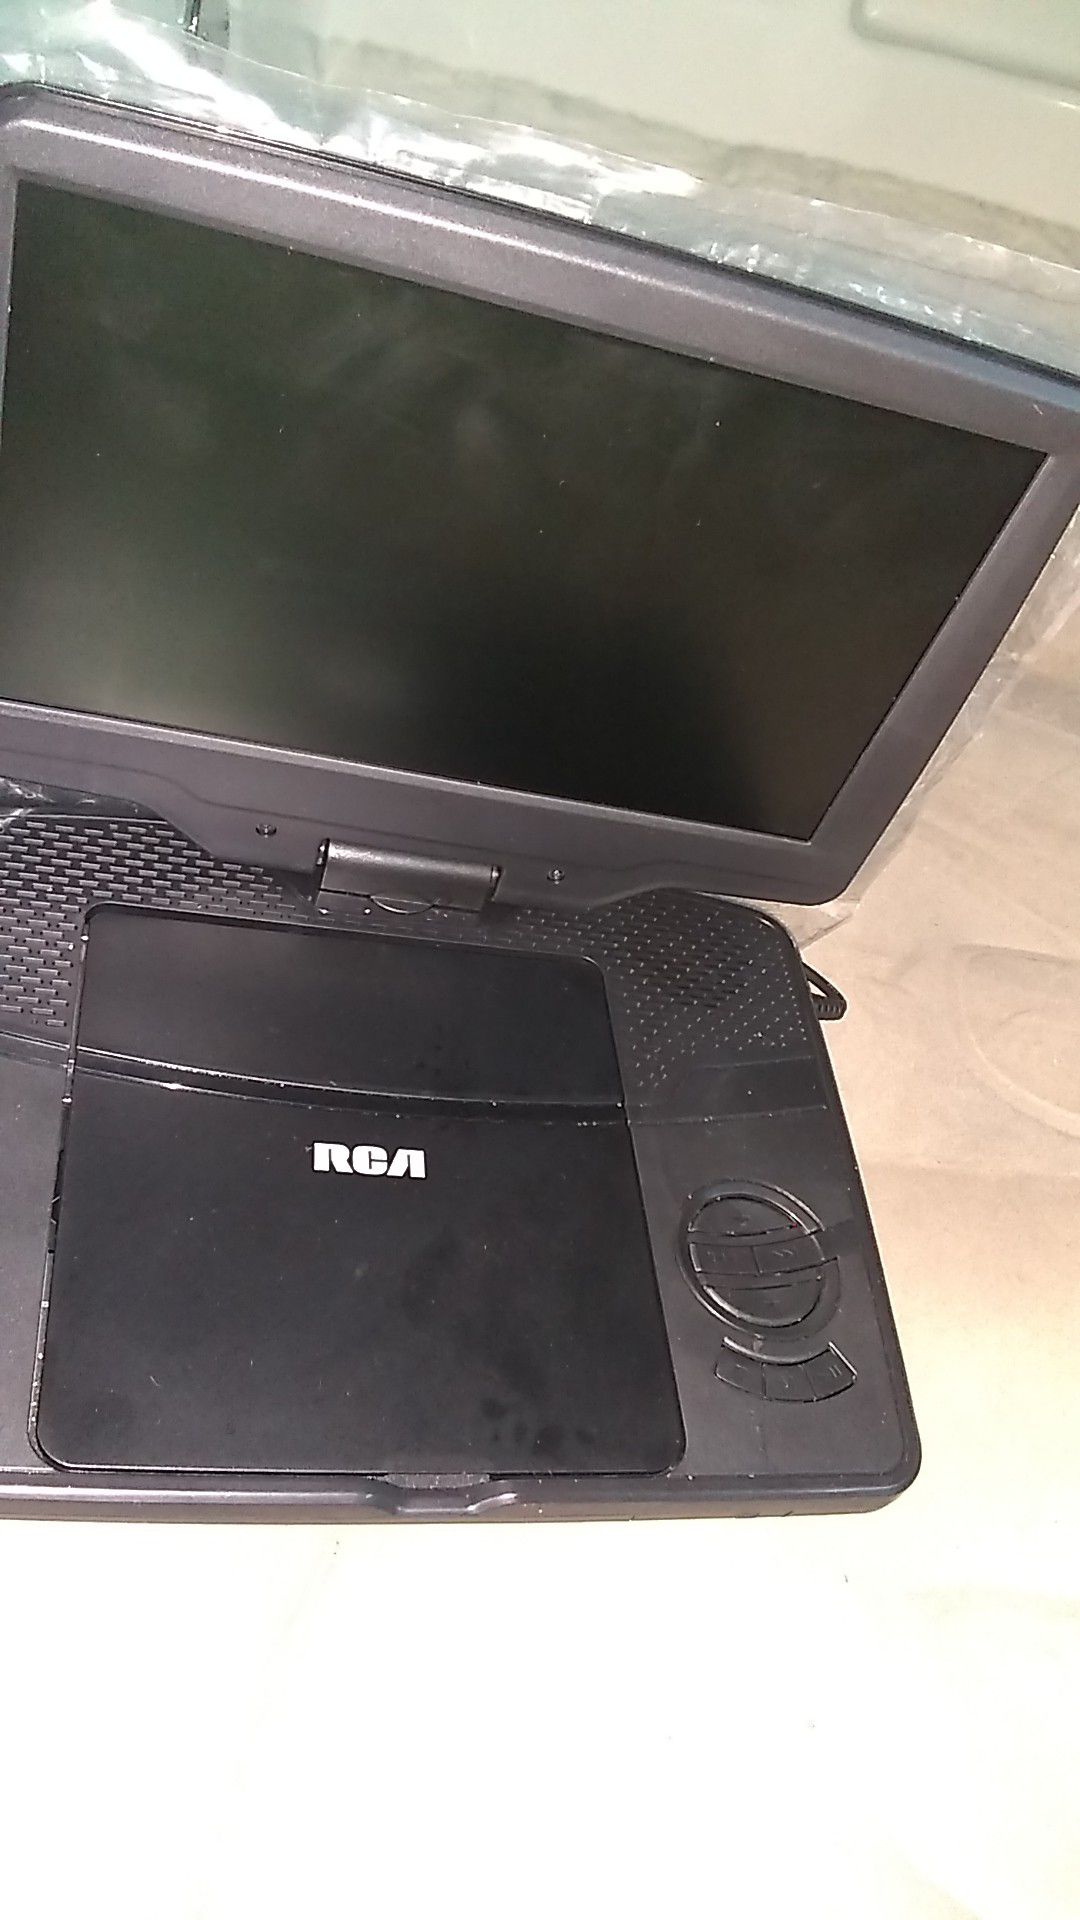 RCA portable dvd player